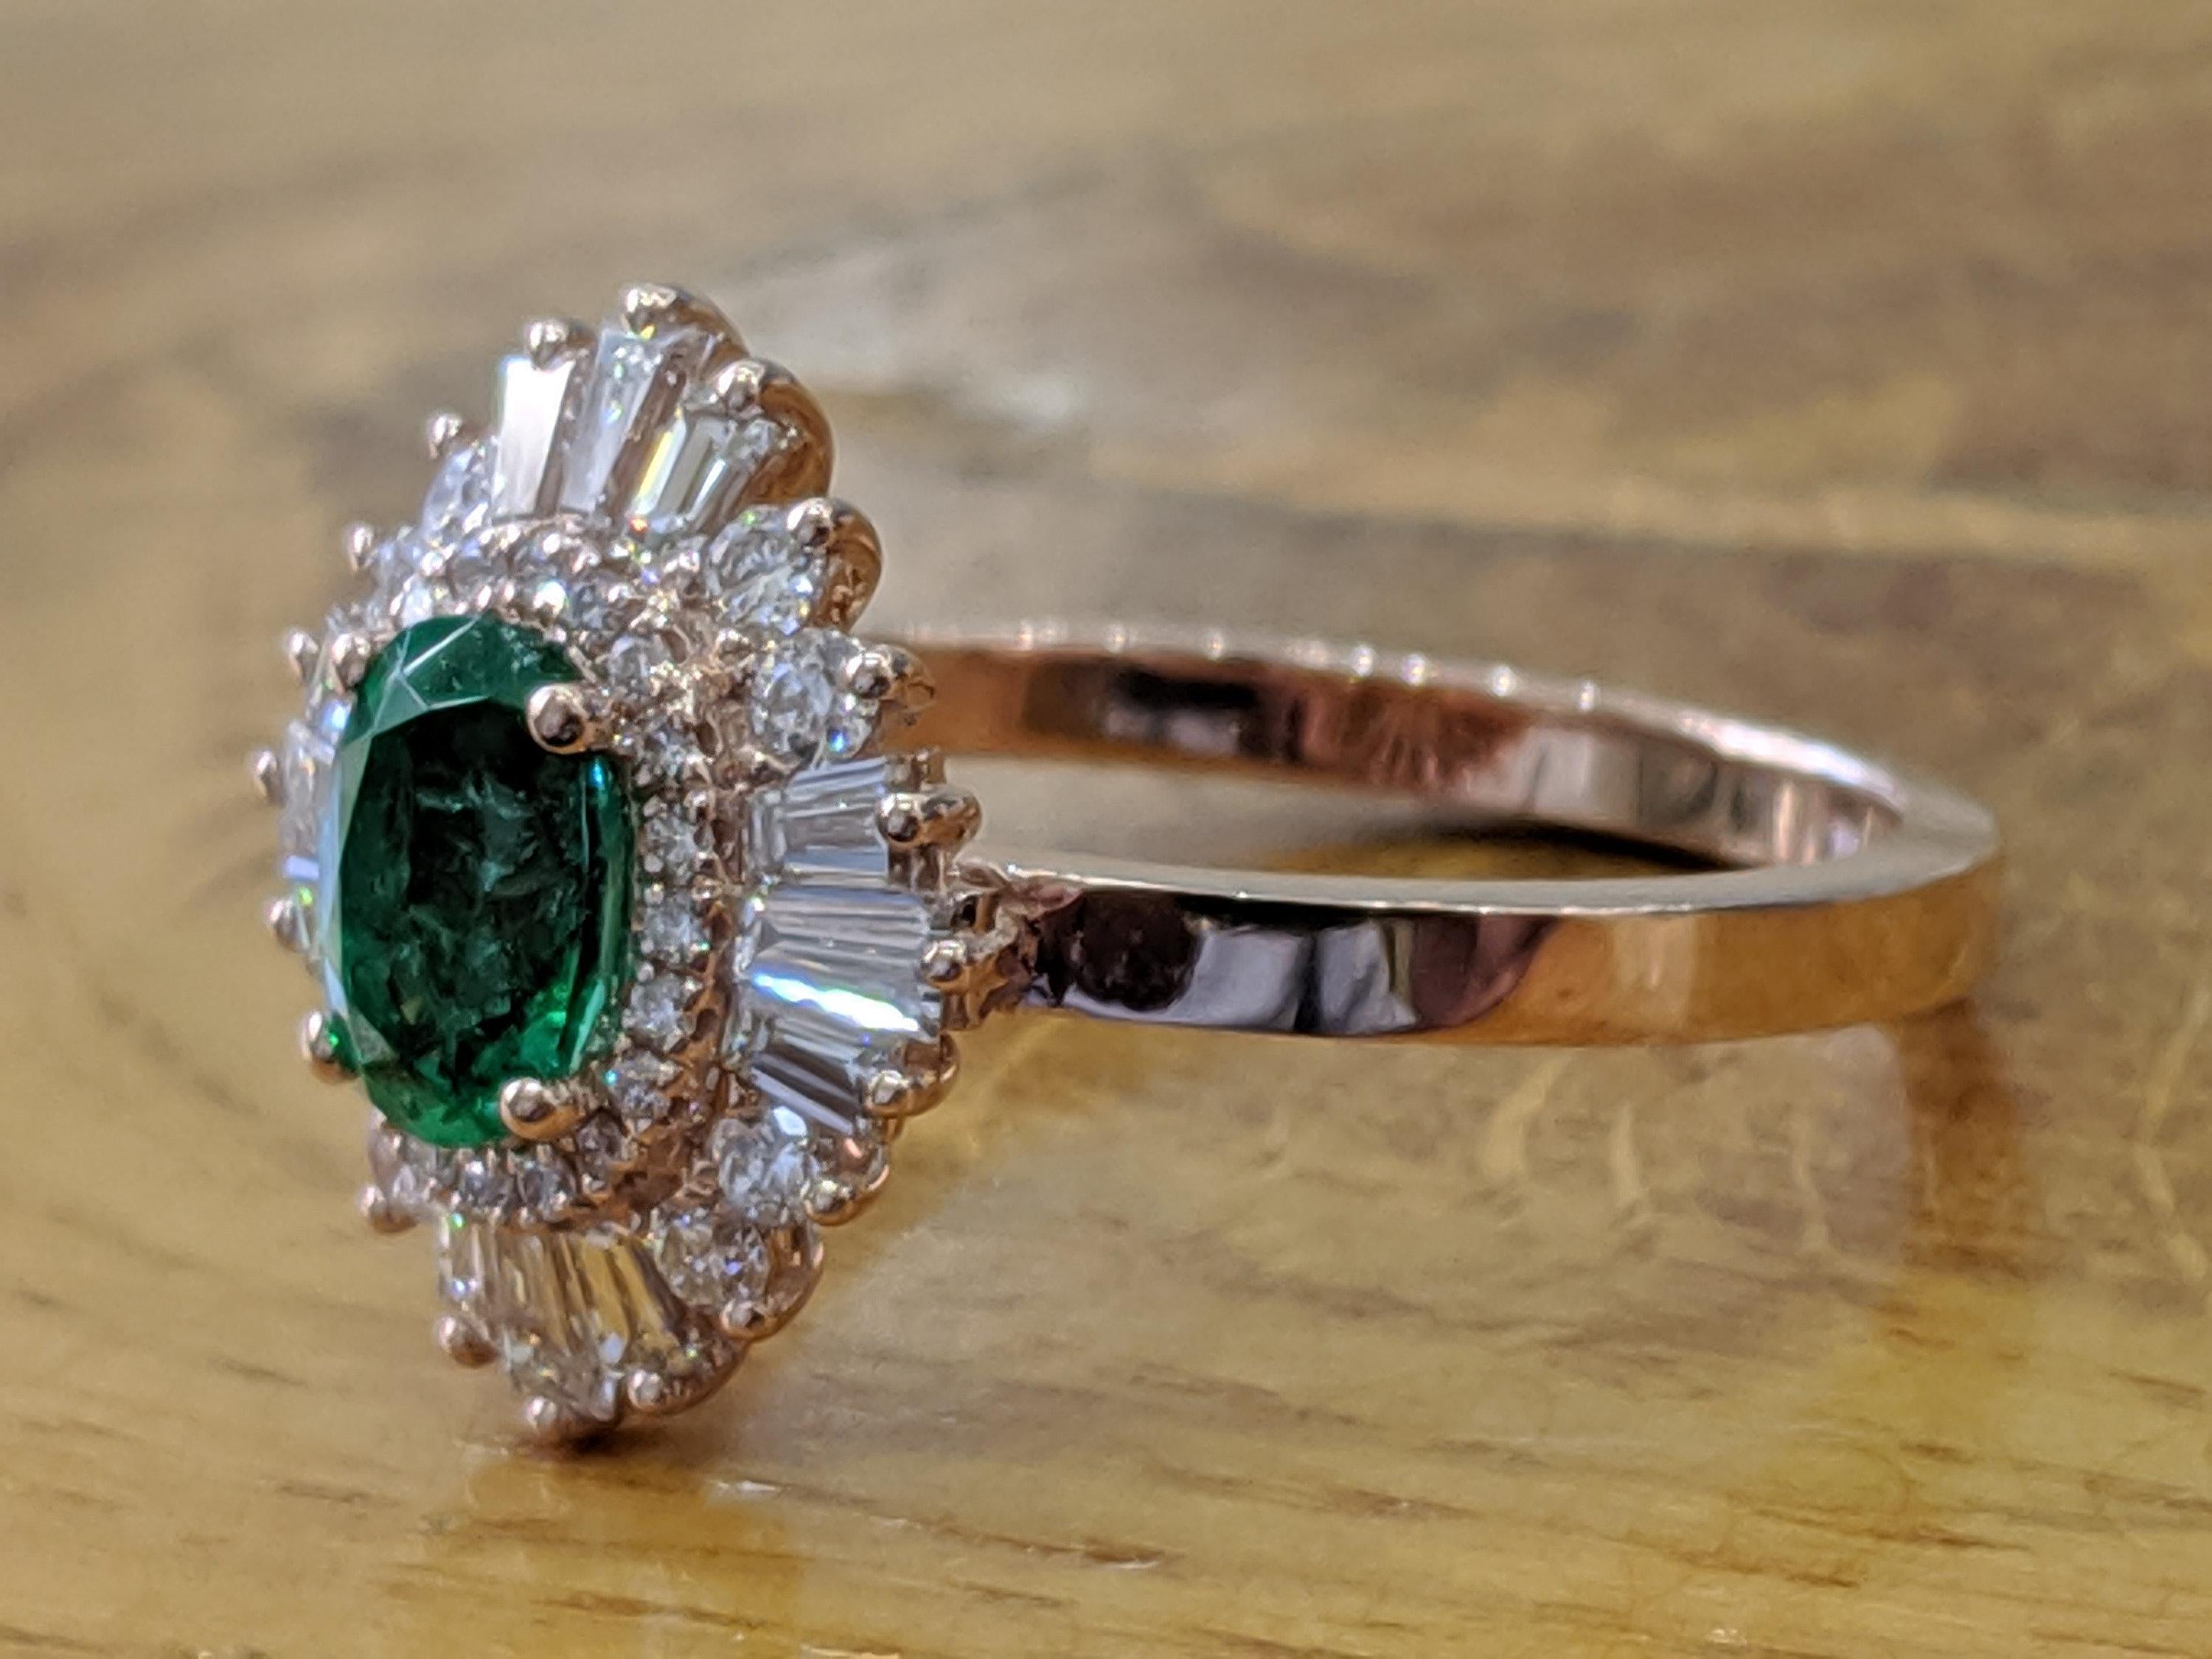 1.4 carat emerald cut diamond